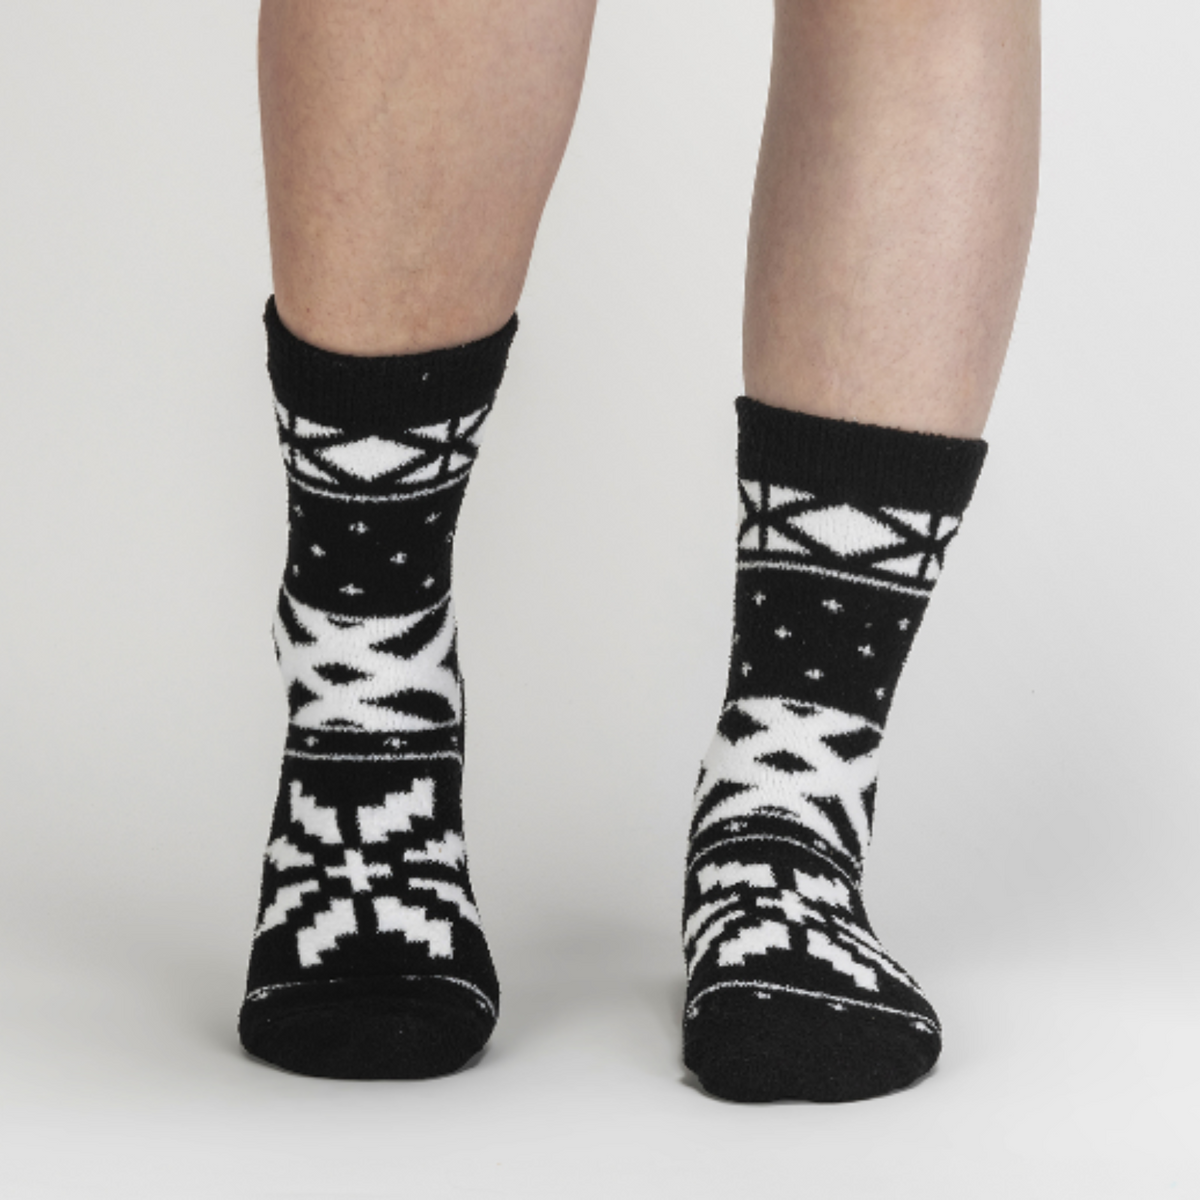 Sock It To Me You Sweater Believe It women&#39;s slipper sock featuring black fair isle pattern. Socks worn by model seen from front. 